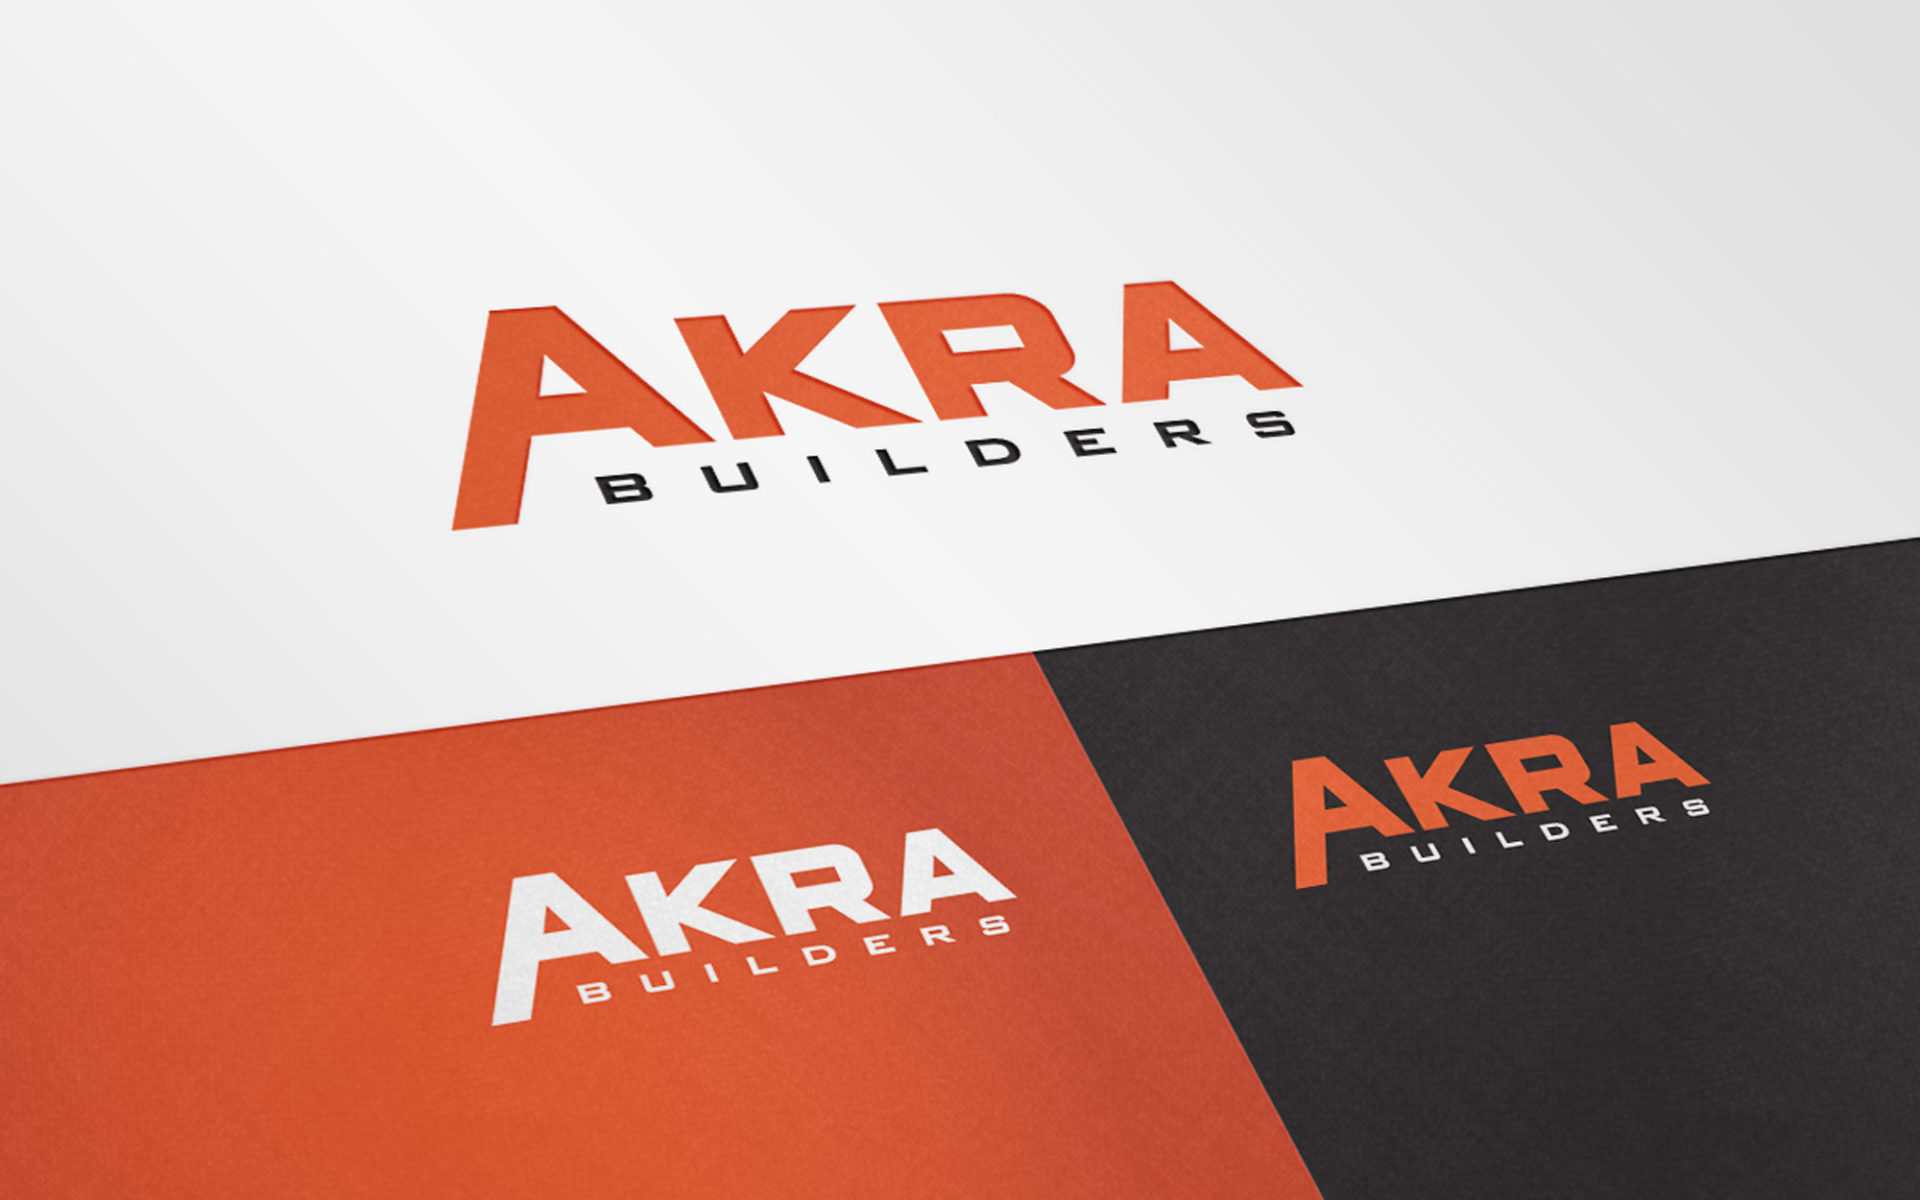 Akra Builders